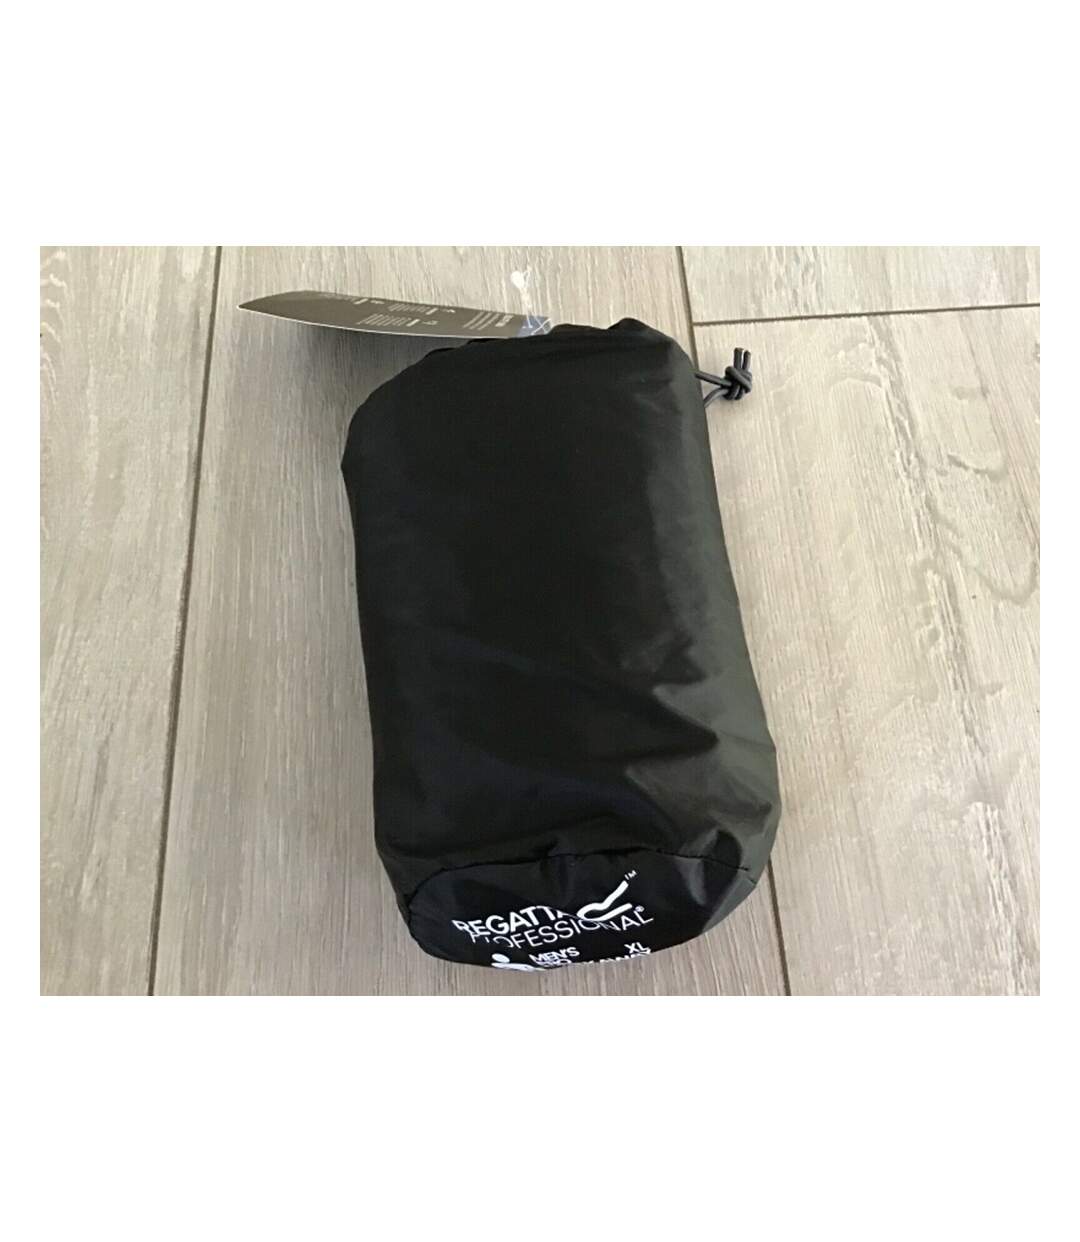 Regatta Pro Mens Packaway Waterproof Breathable Jacket (Black) - UTPC2994